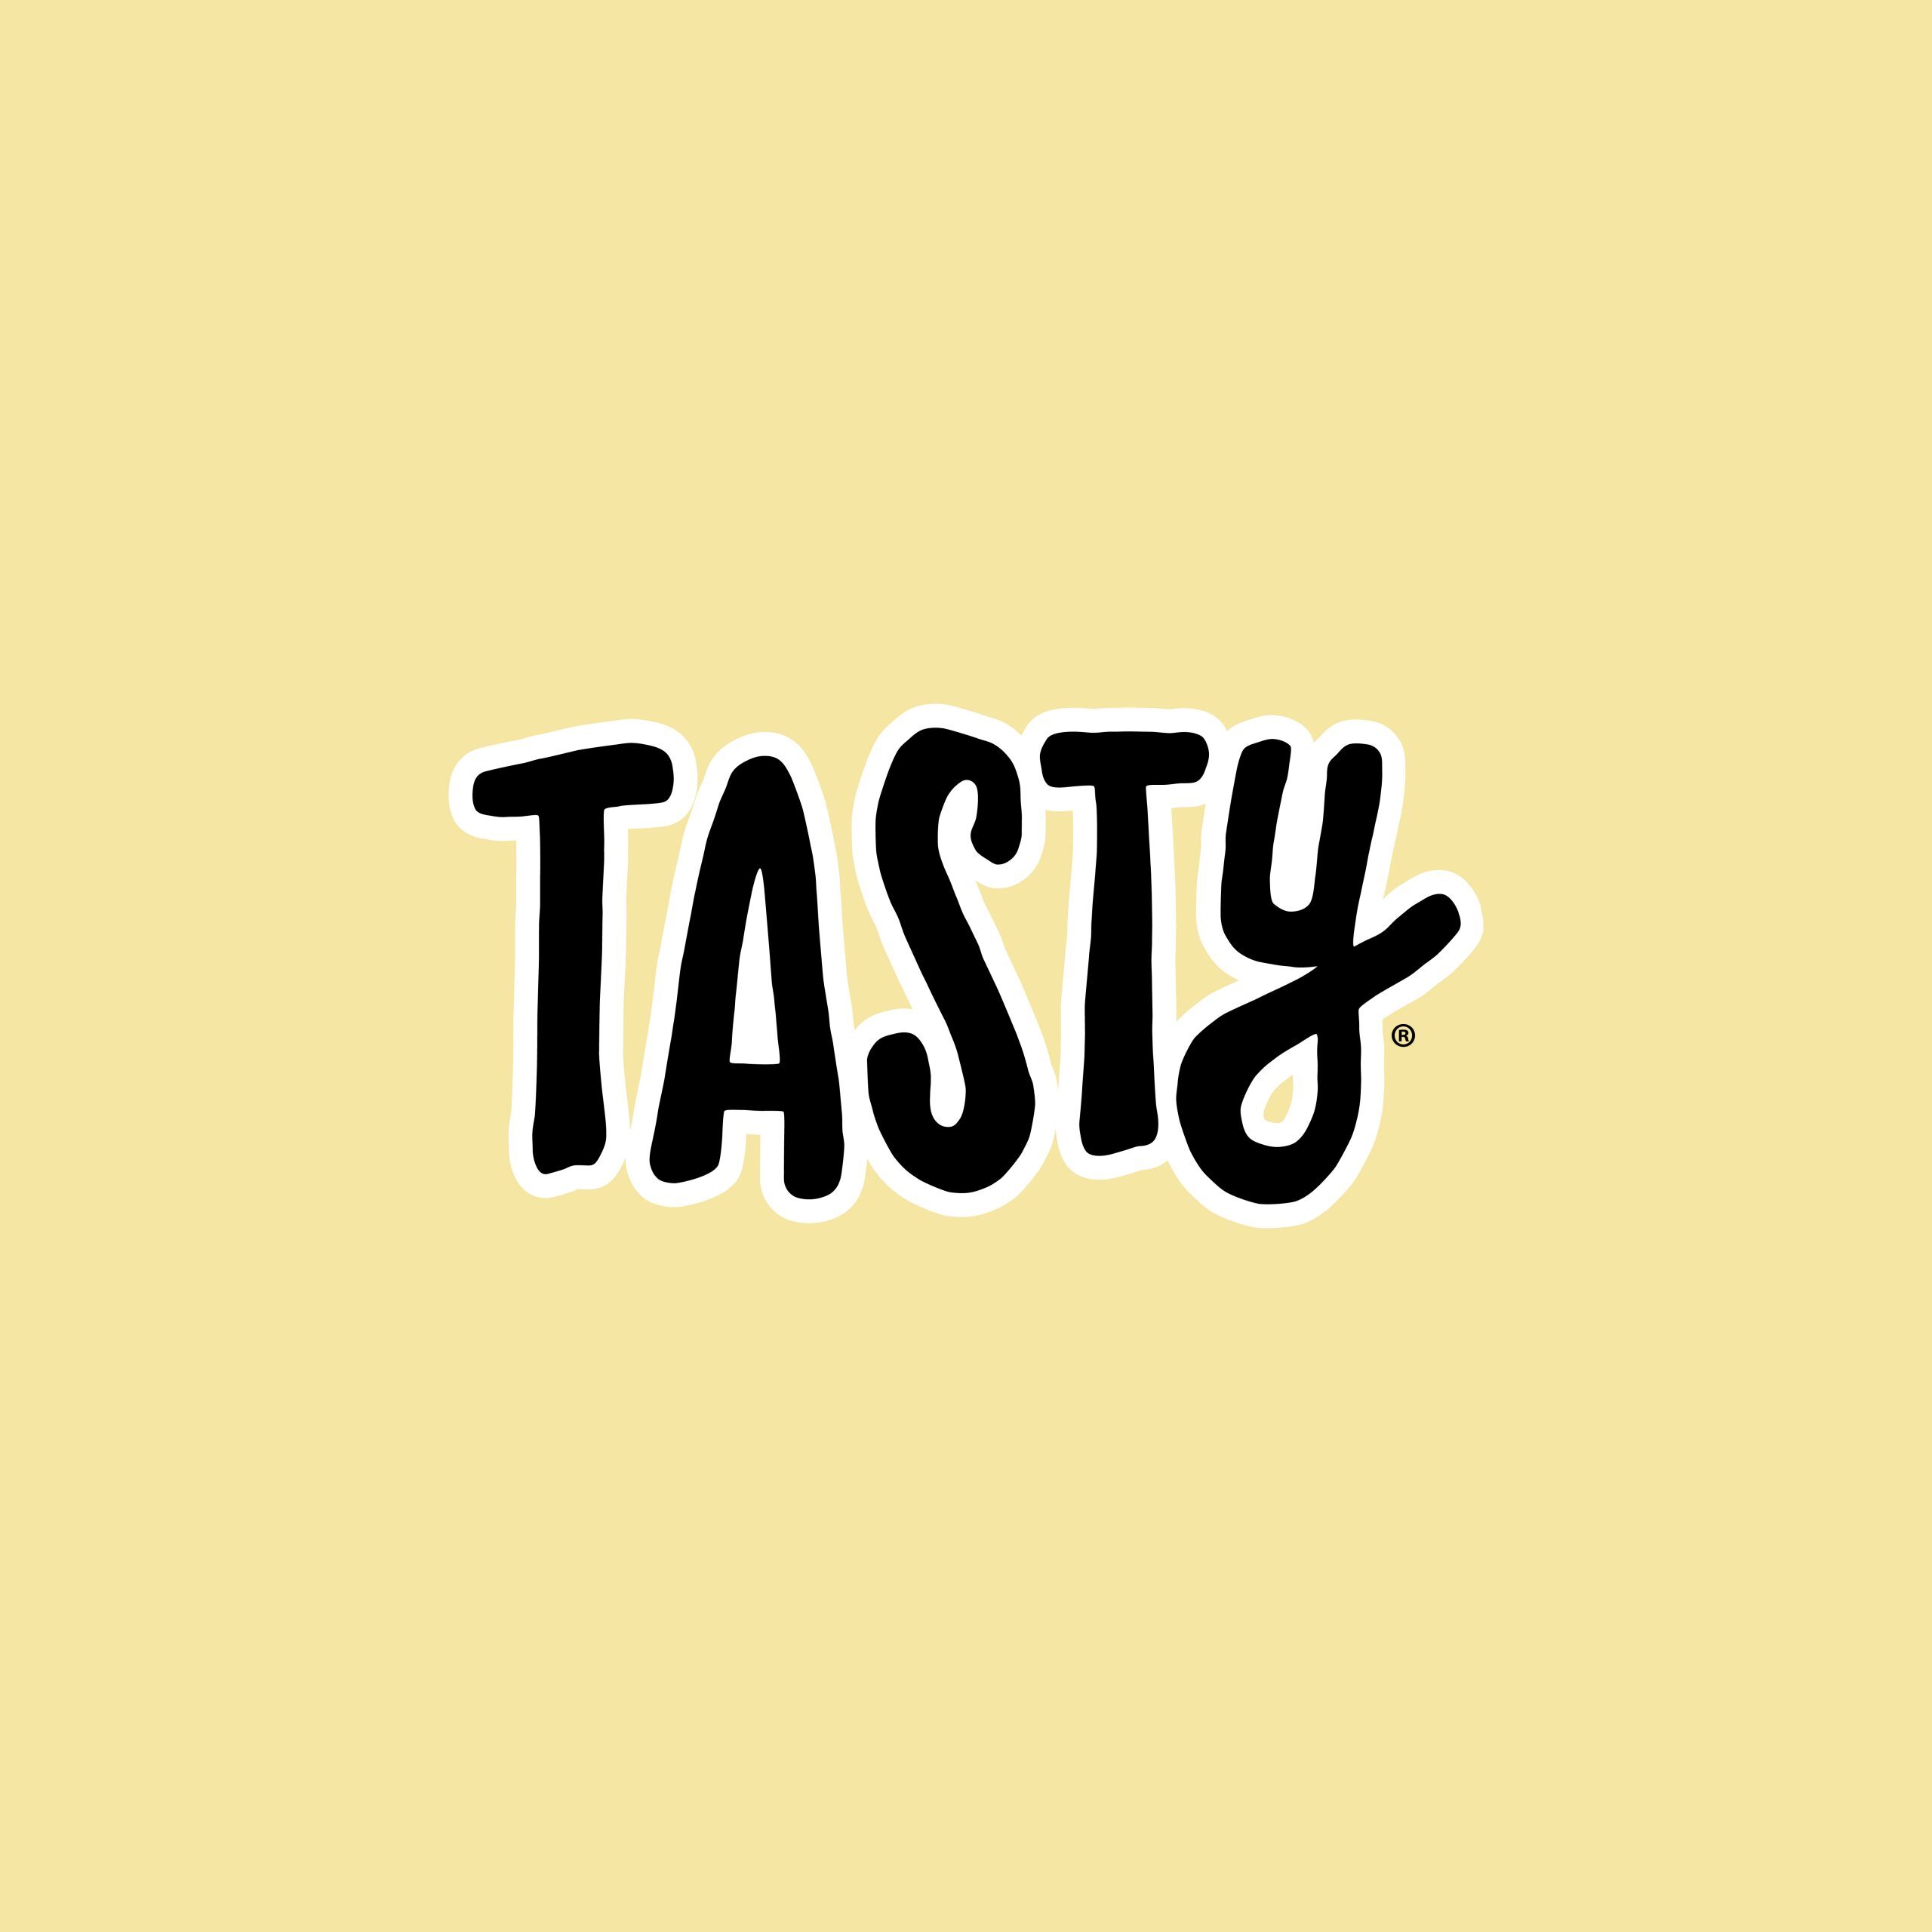 Tasty-logo-01-01-01